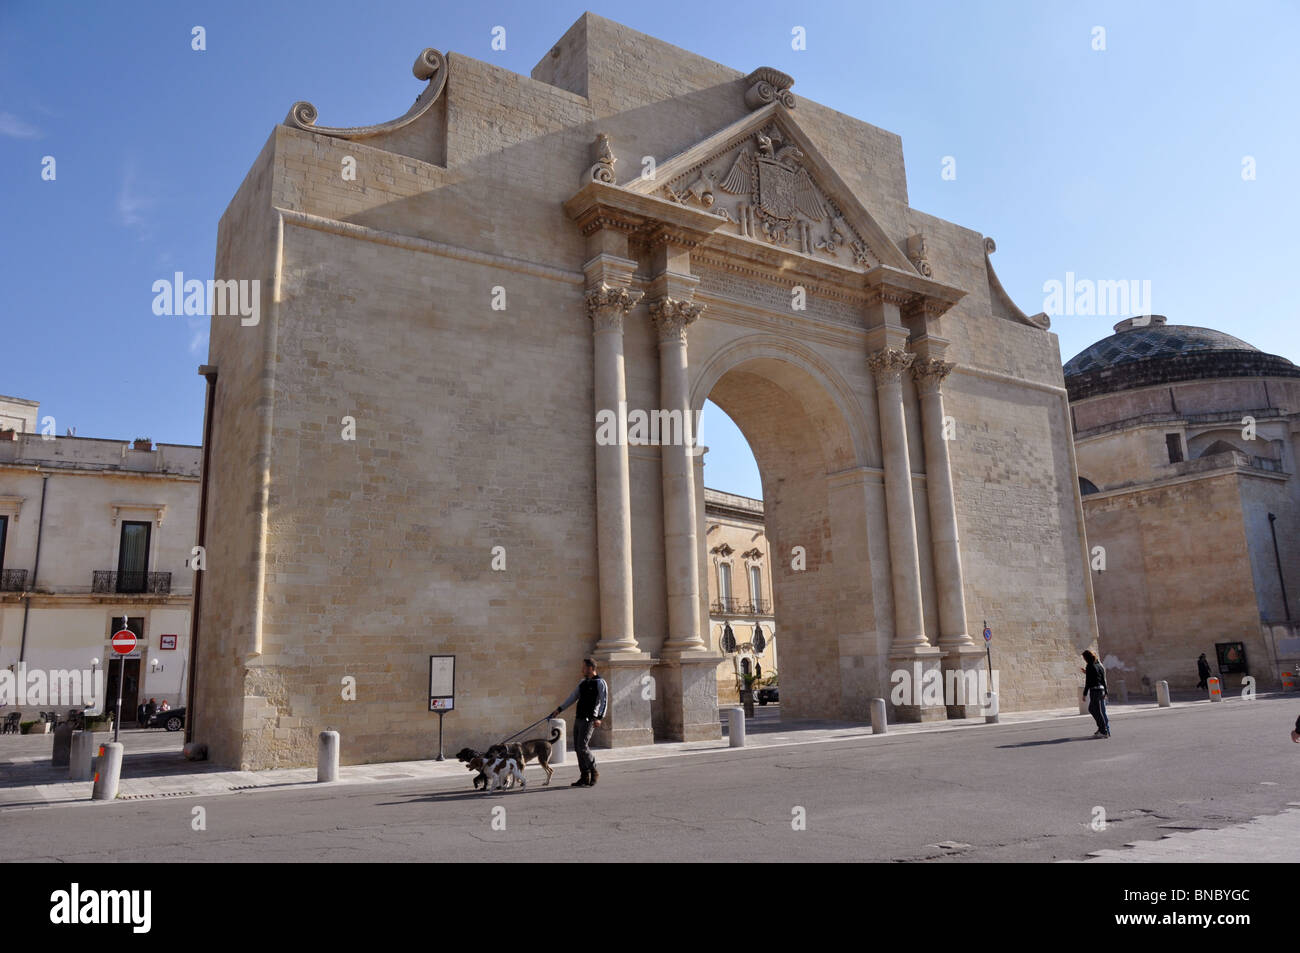 Porta Napoli 1548 en l'honneur de CarloV - Lecce - Pouilles - Italie Banque D'Images